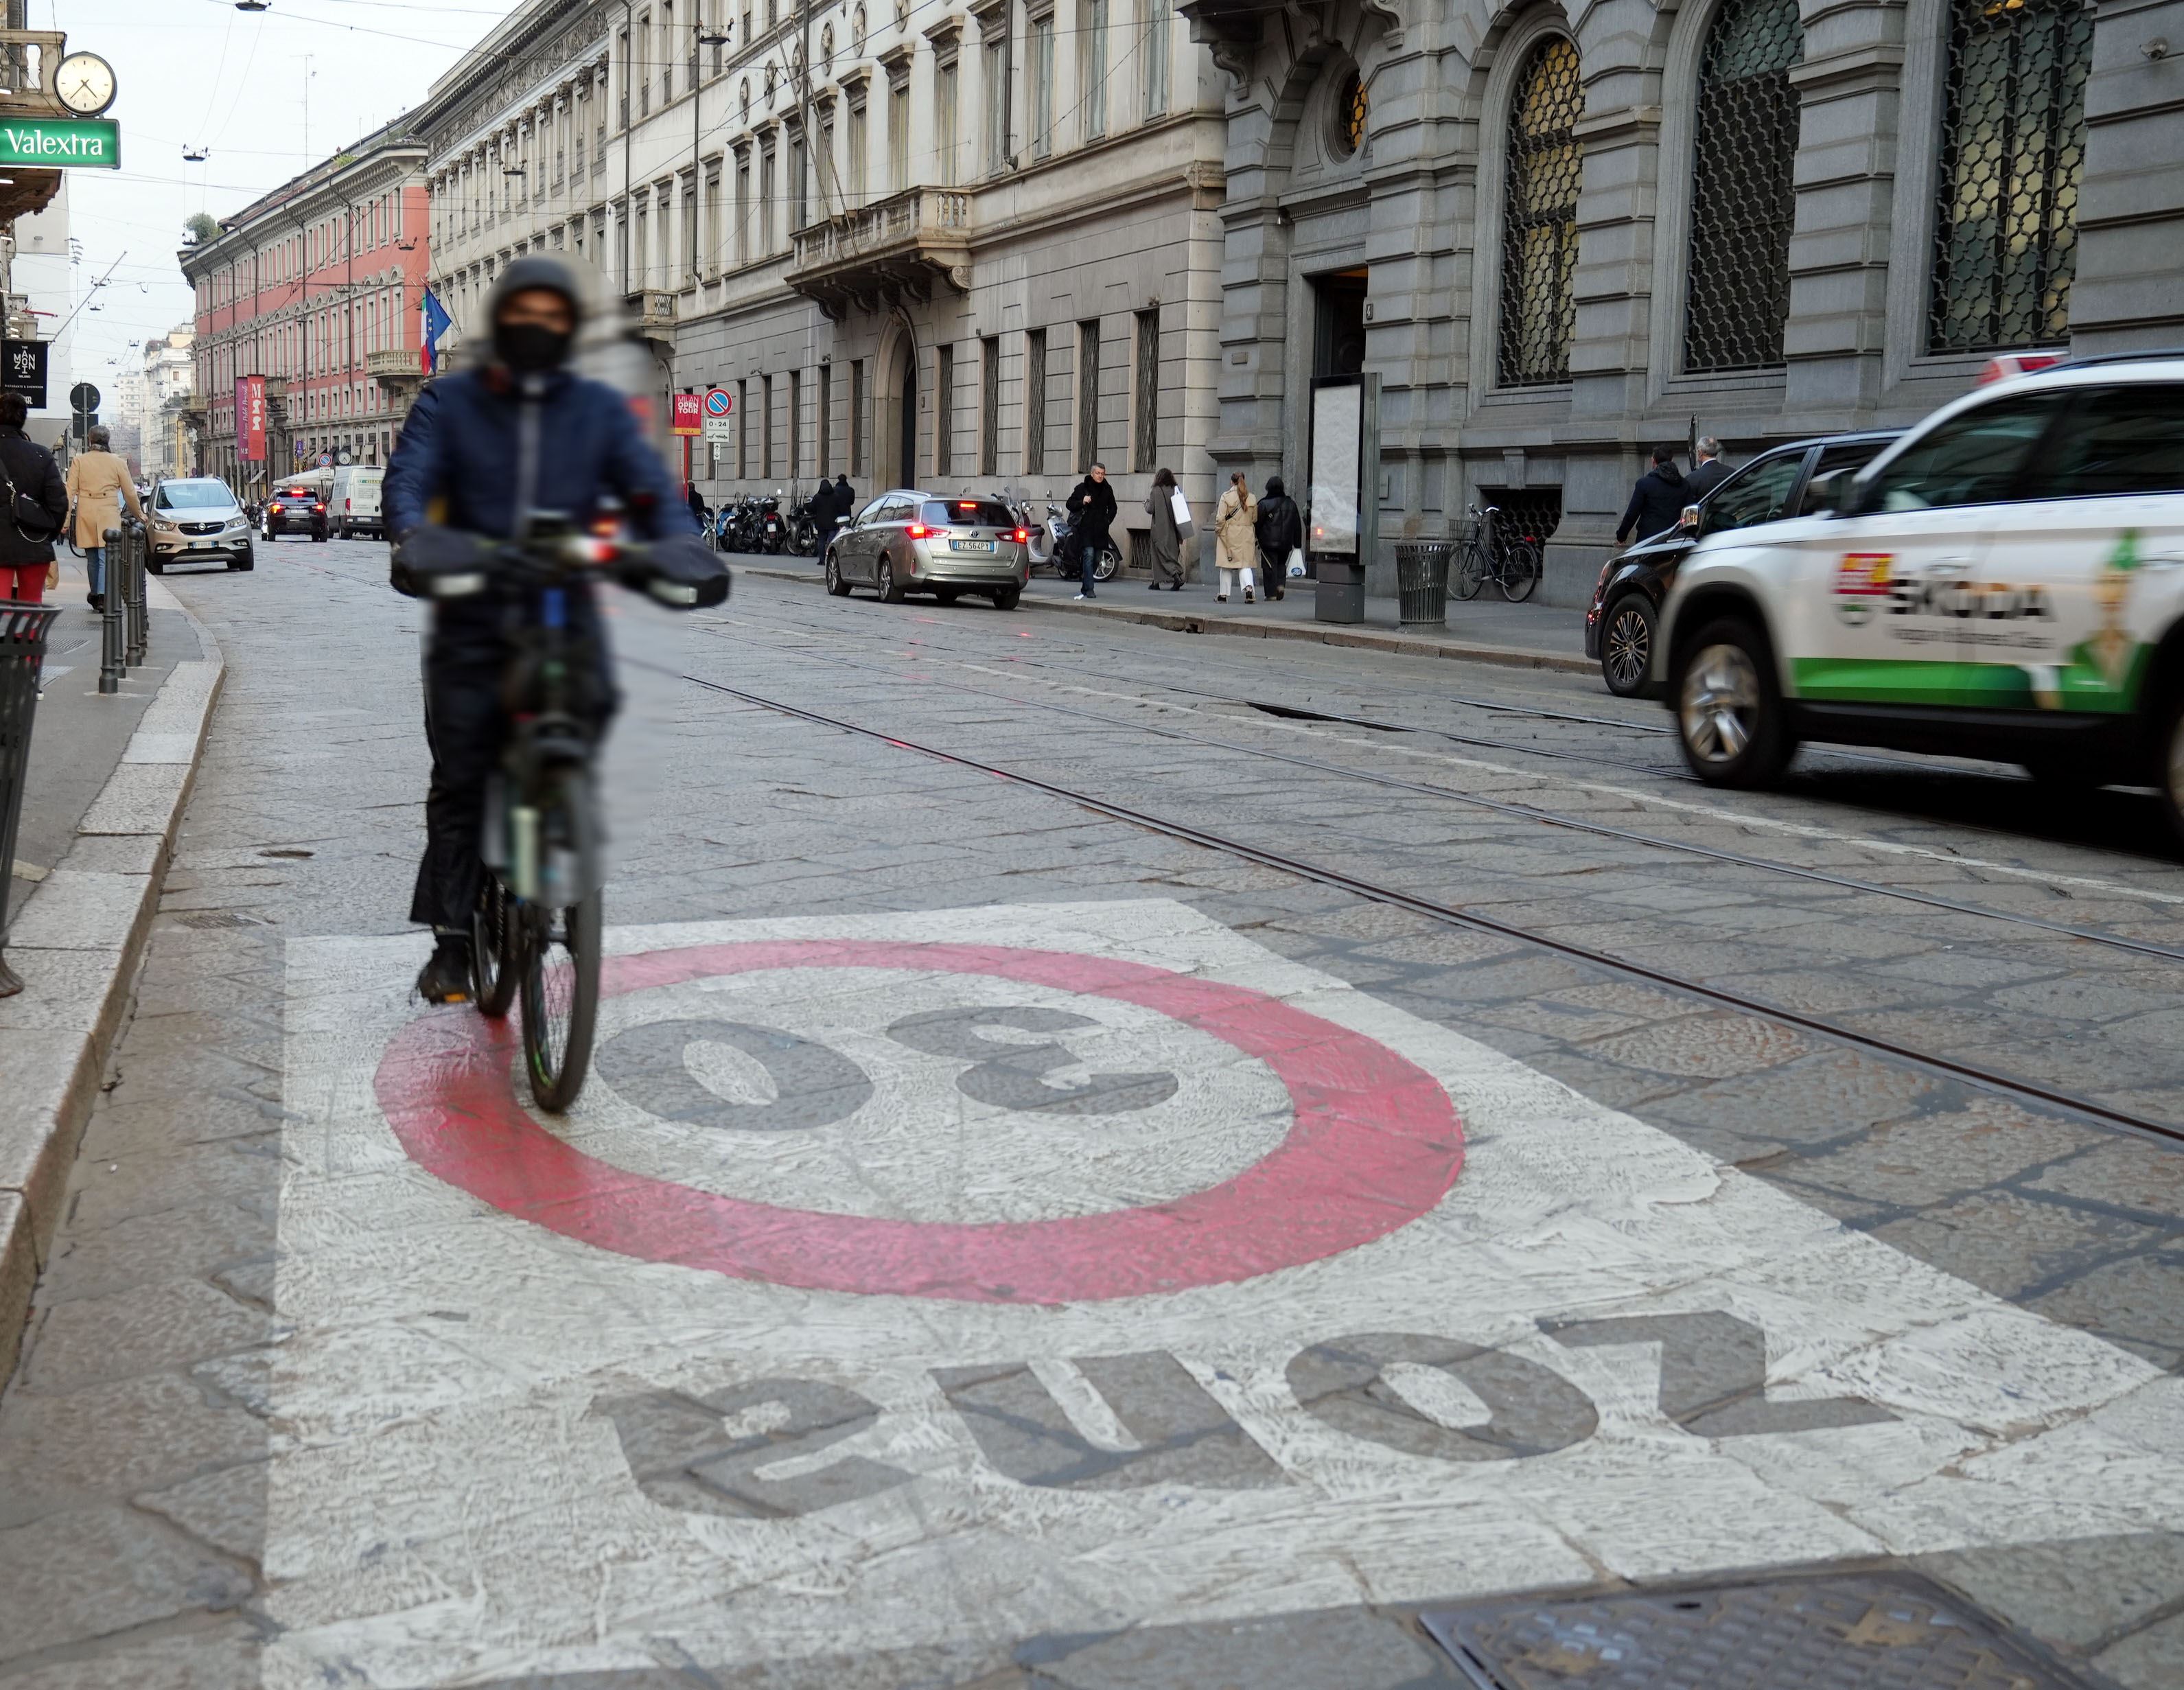  Milano, a 30 km all'ora l'inquinamento aumenta: ecco perchè